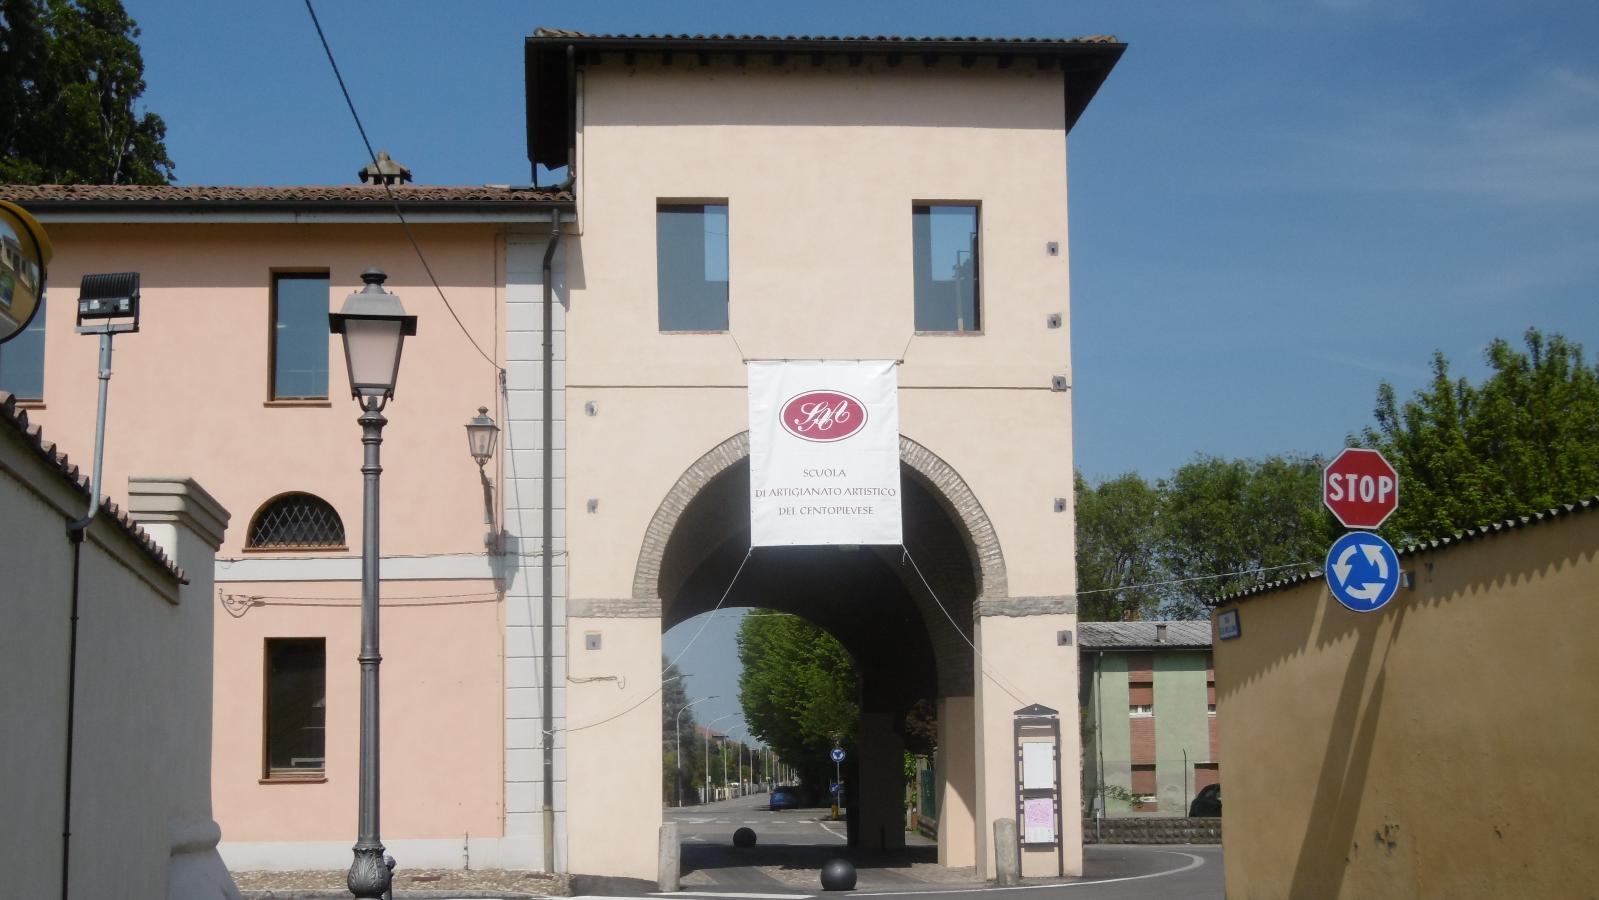 Porta Ferrara, Pieve di Cento - foto dell'archivio del Comune di Pieve di Cento, 2021